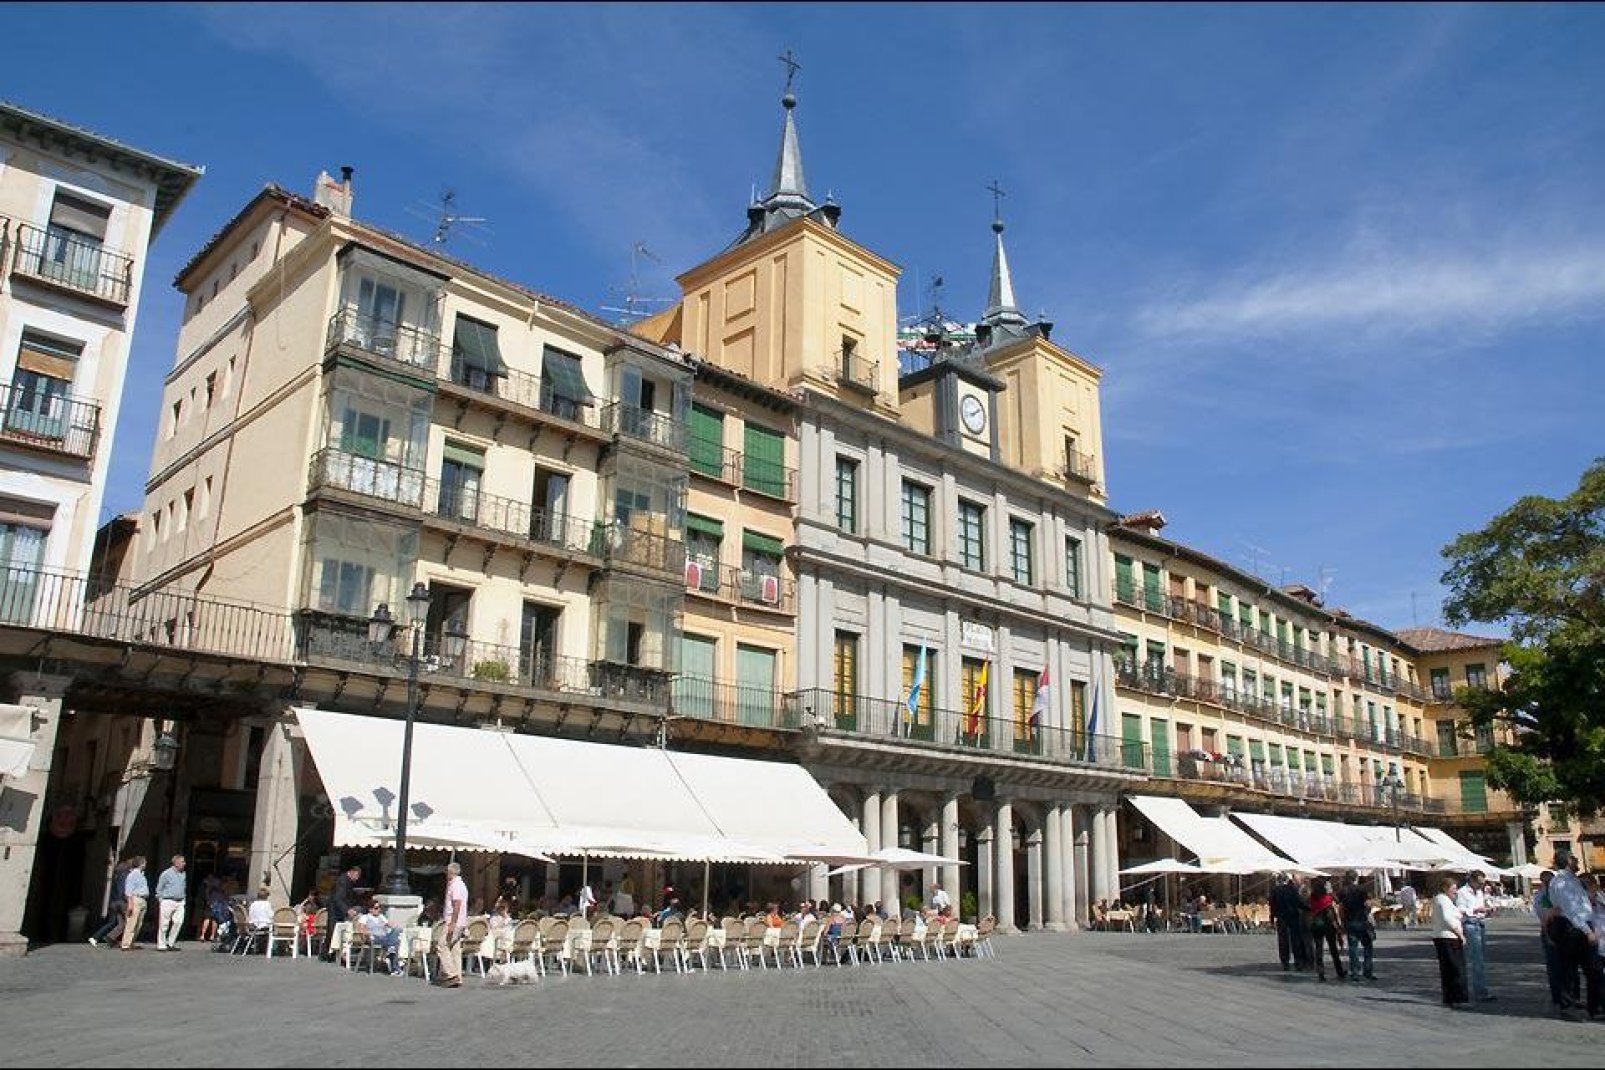 Segovia es la capital de la provincia homónima. Es una ciudad importante de Castilla y León. Está situada a unos cien kilómetros de Madrid.